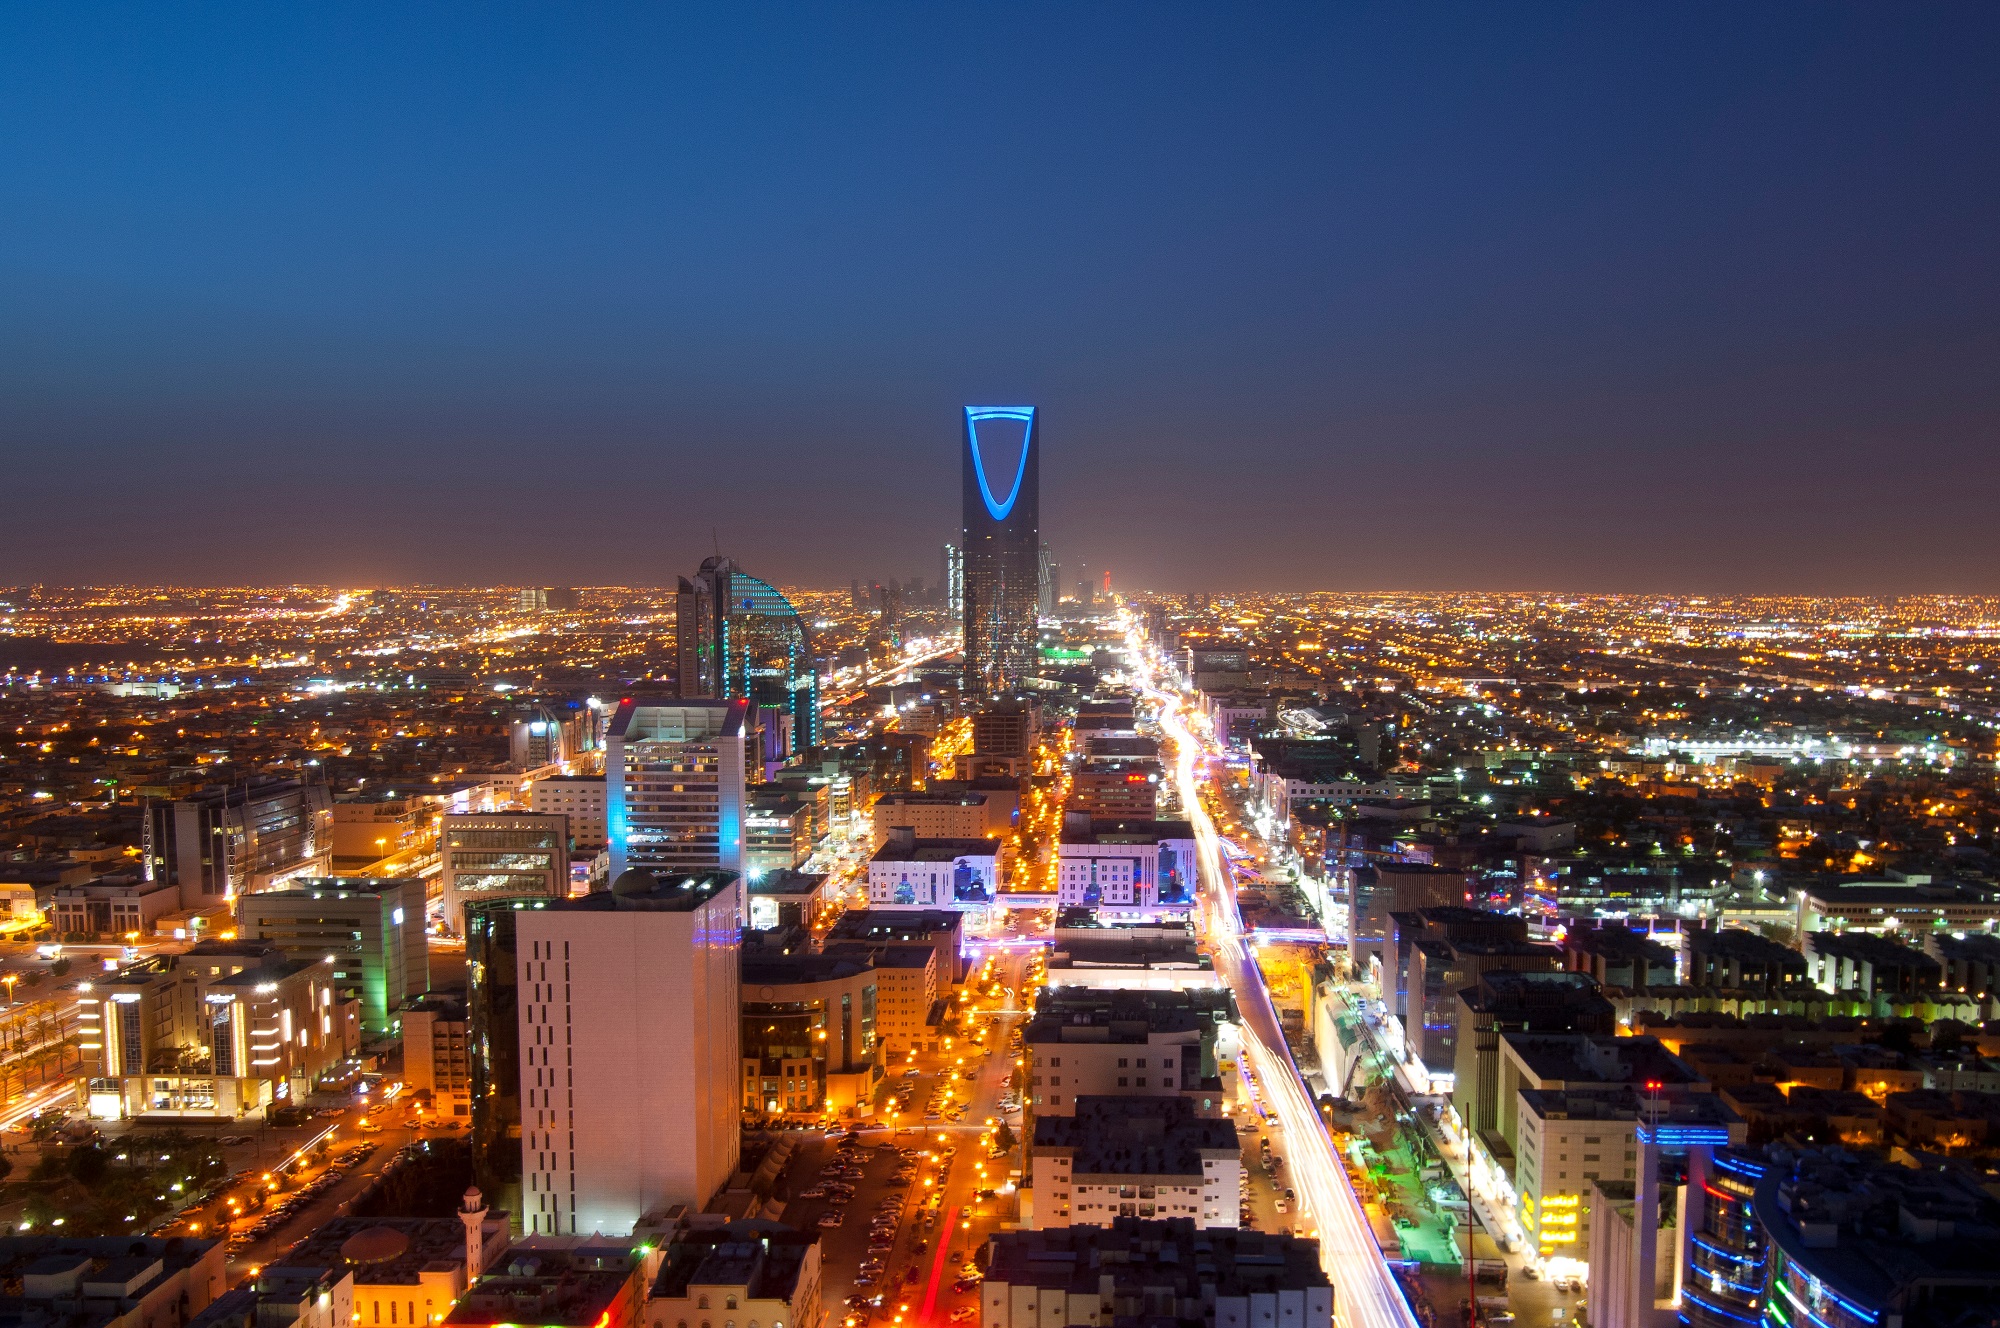 صورة عامة للعاصمة السعودية الرياض. (shutterstock)